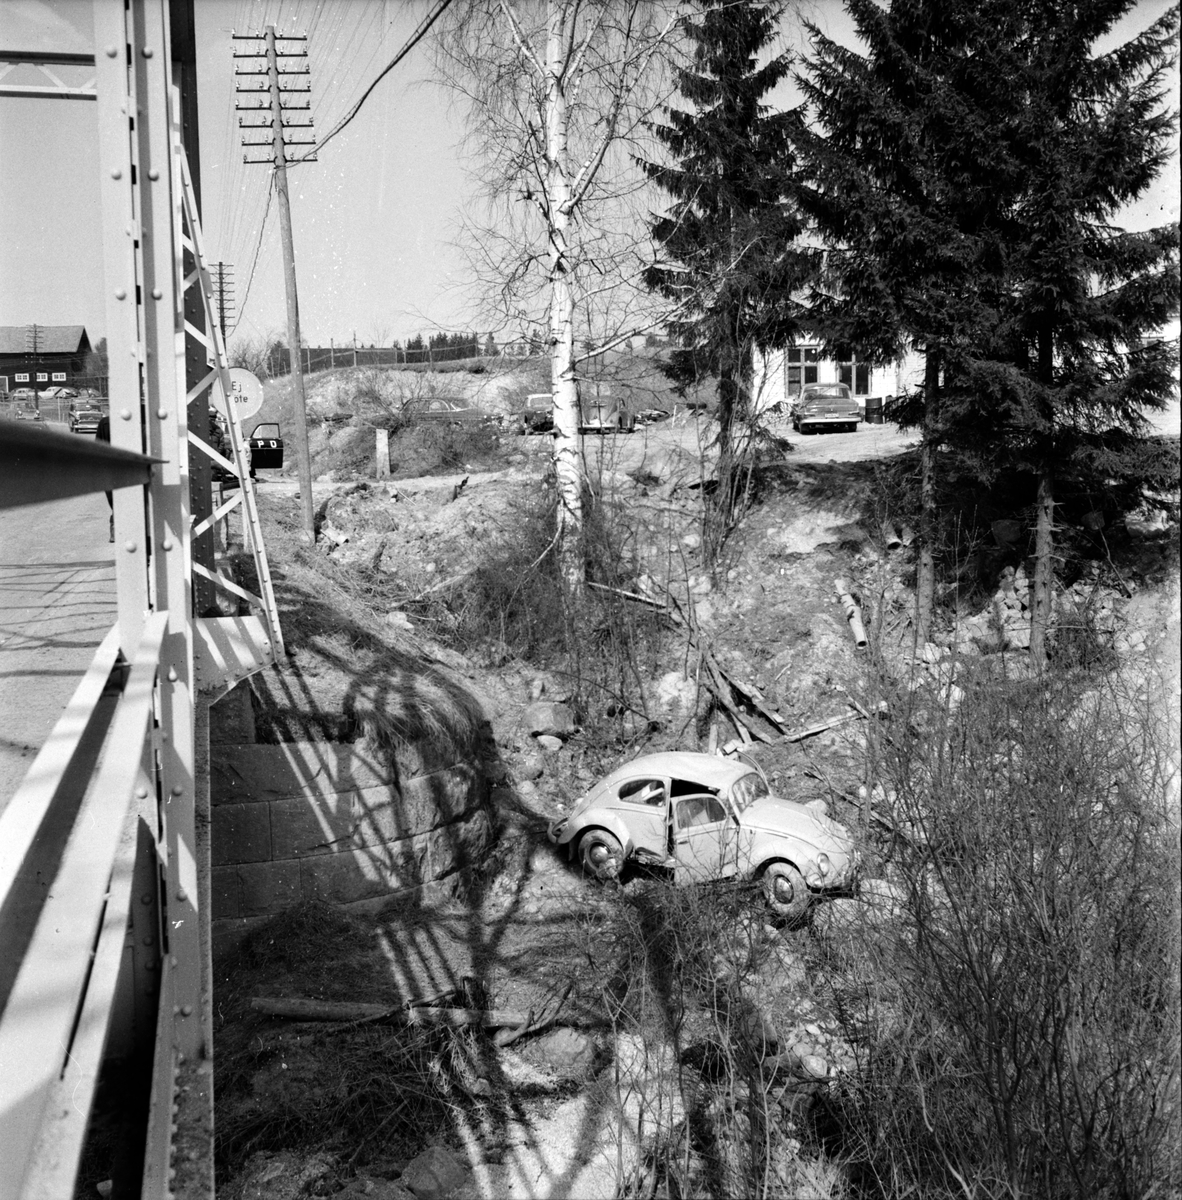 Sunnerstaholm,
Trafikolycka,
Nils David Svensson,
23 April 1965